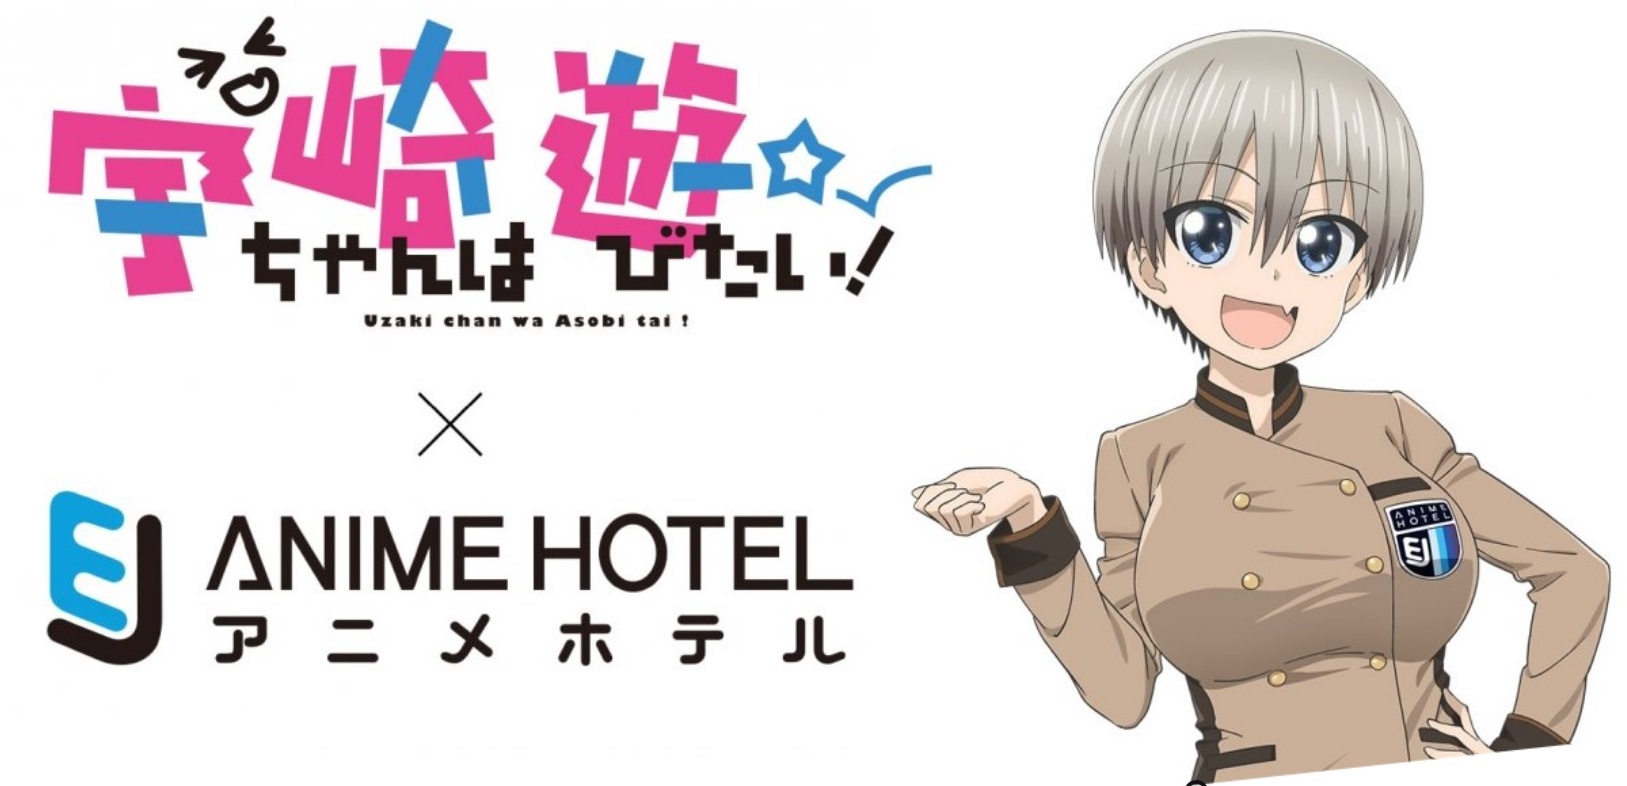 5 Must-Visit Hotels For Anime Lovers | Rakuten Travel